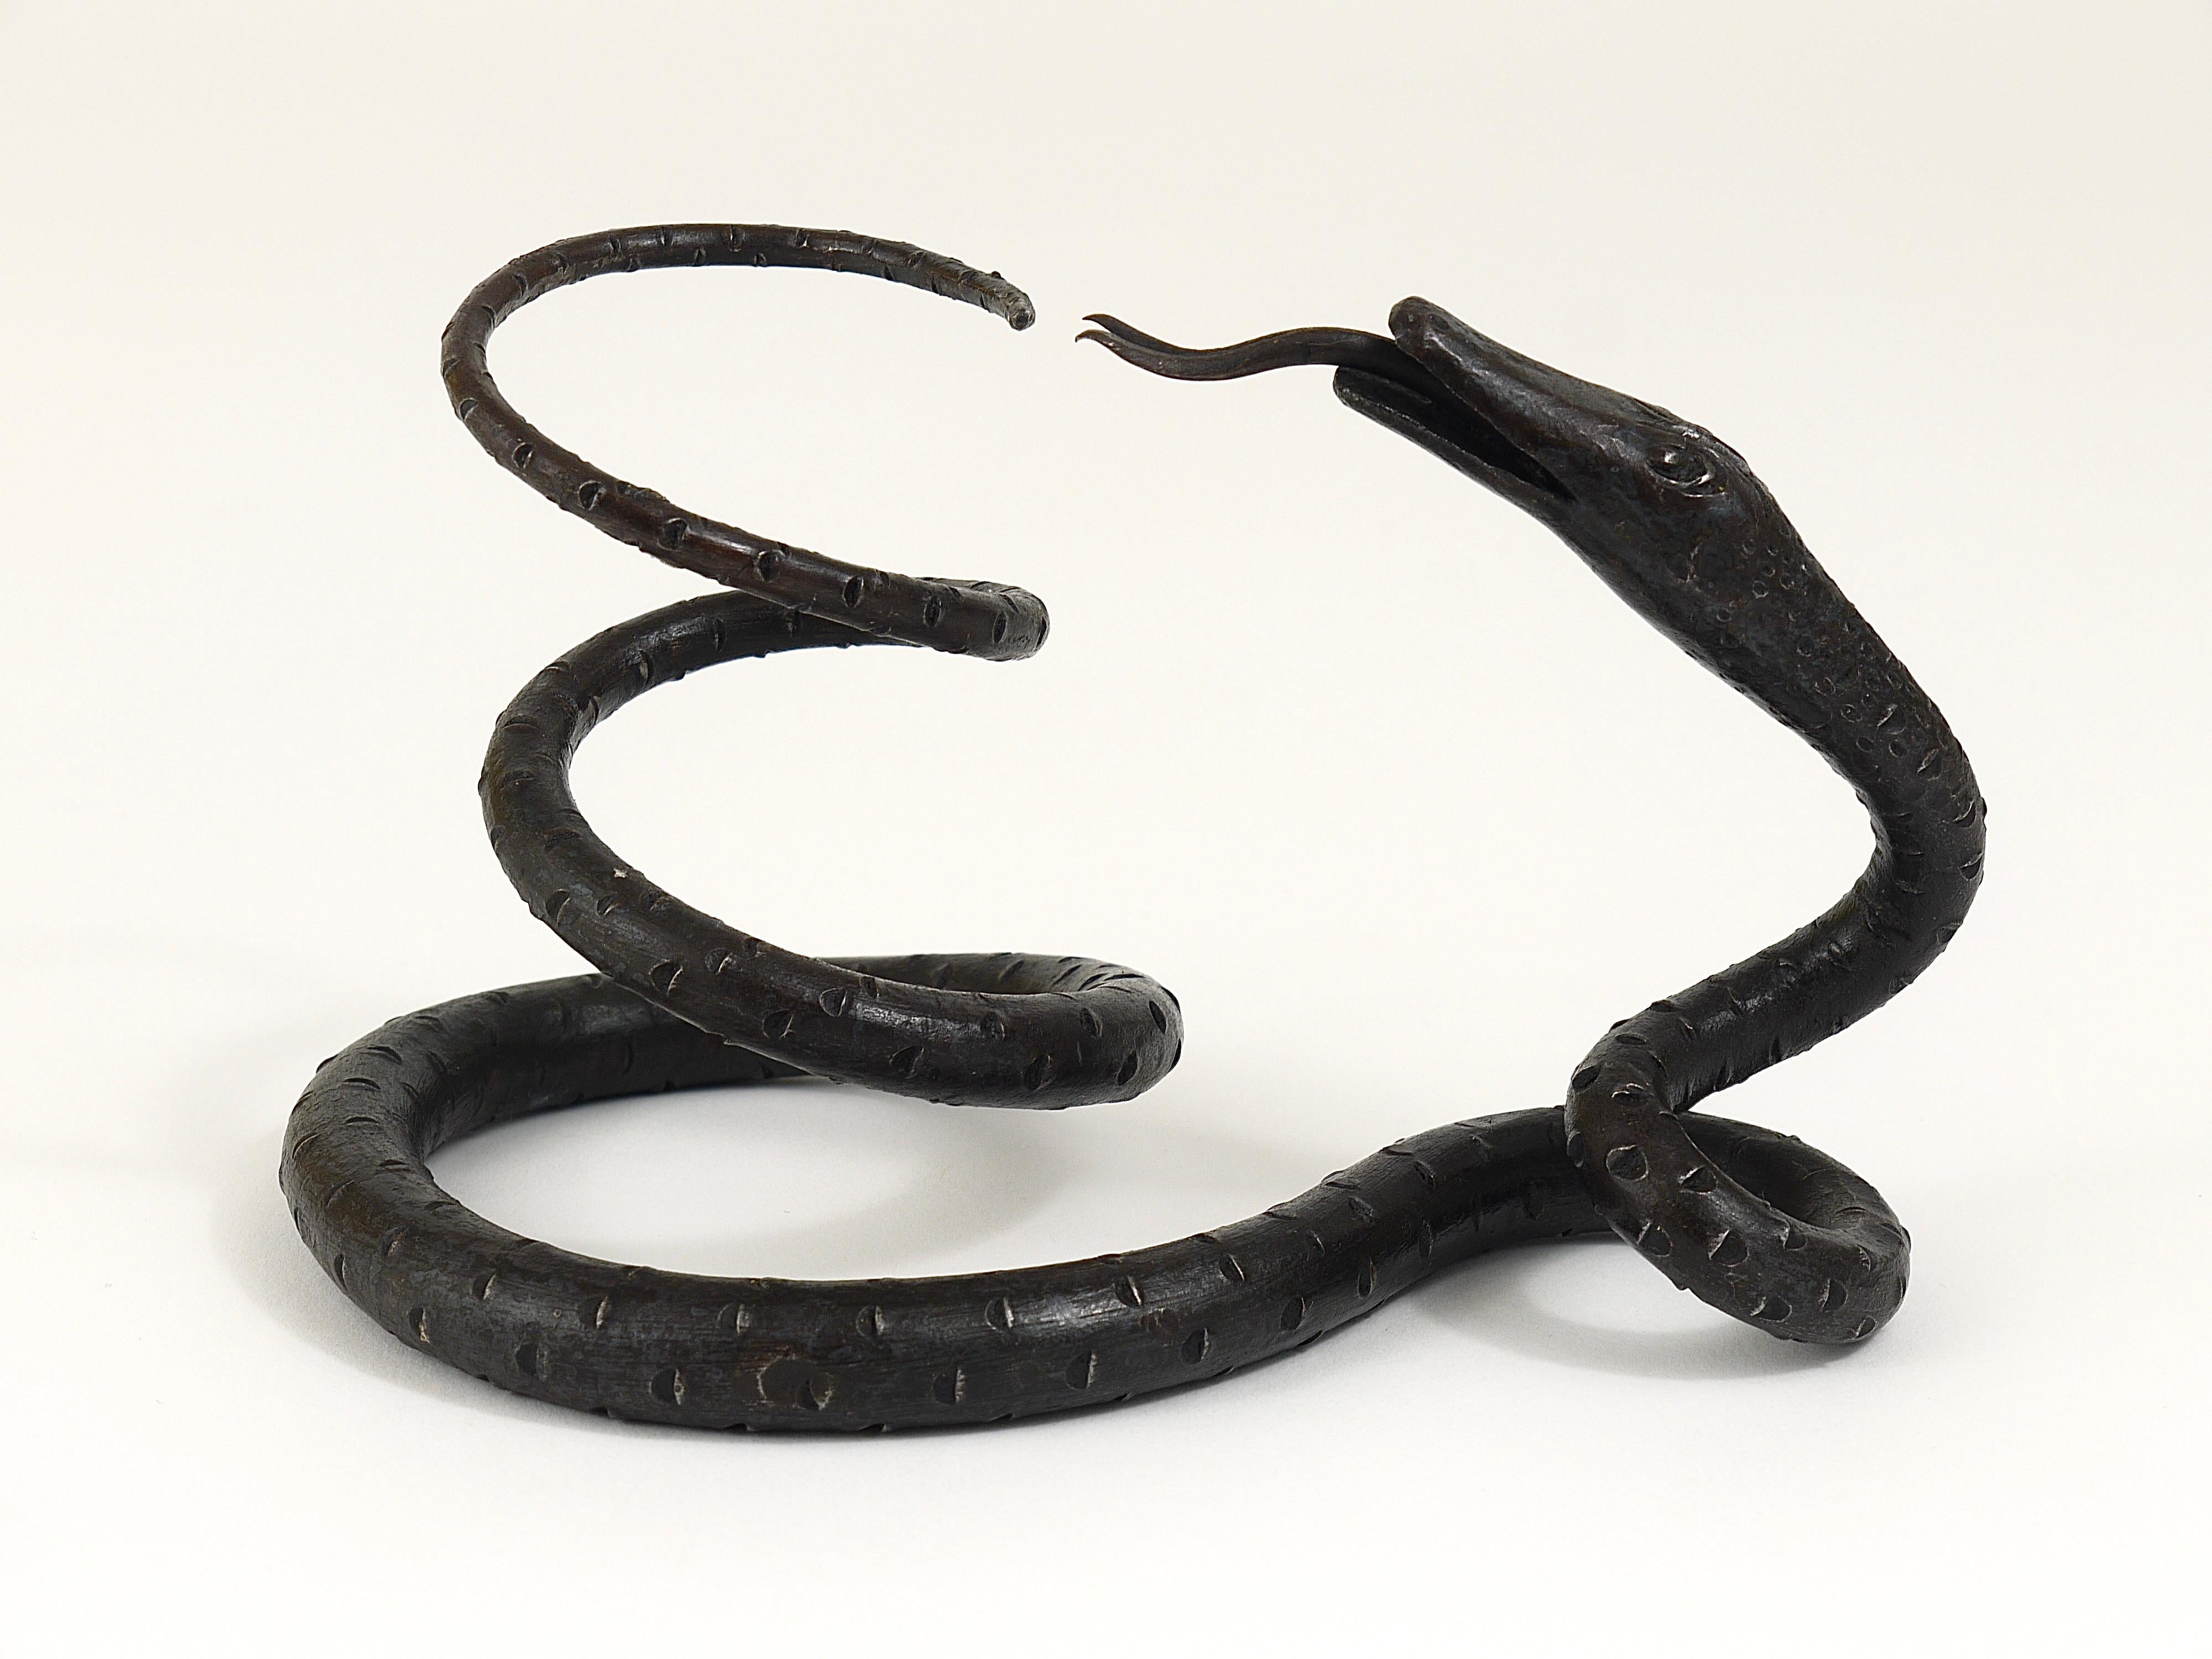 Ein schmiedeeisernes Modell einer Schlange aus der Jugendstilzeit. Hochwertige Handwerkskunst, handgefertigt aus geschmiedetem Eisen von einem Wiener Schlosser in den 1920er Jahren.
Ein dekoratives Objekt, das sich gut in Ihrem Regal machen würde,